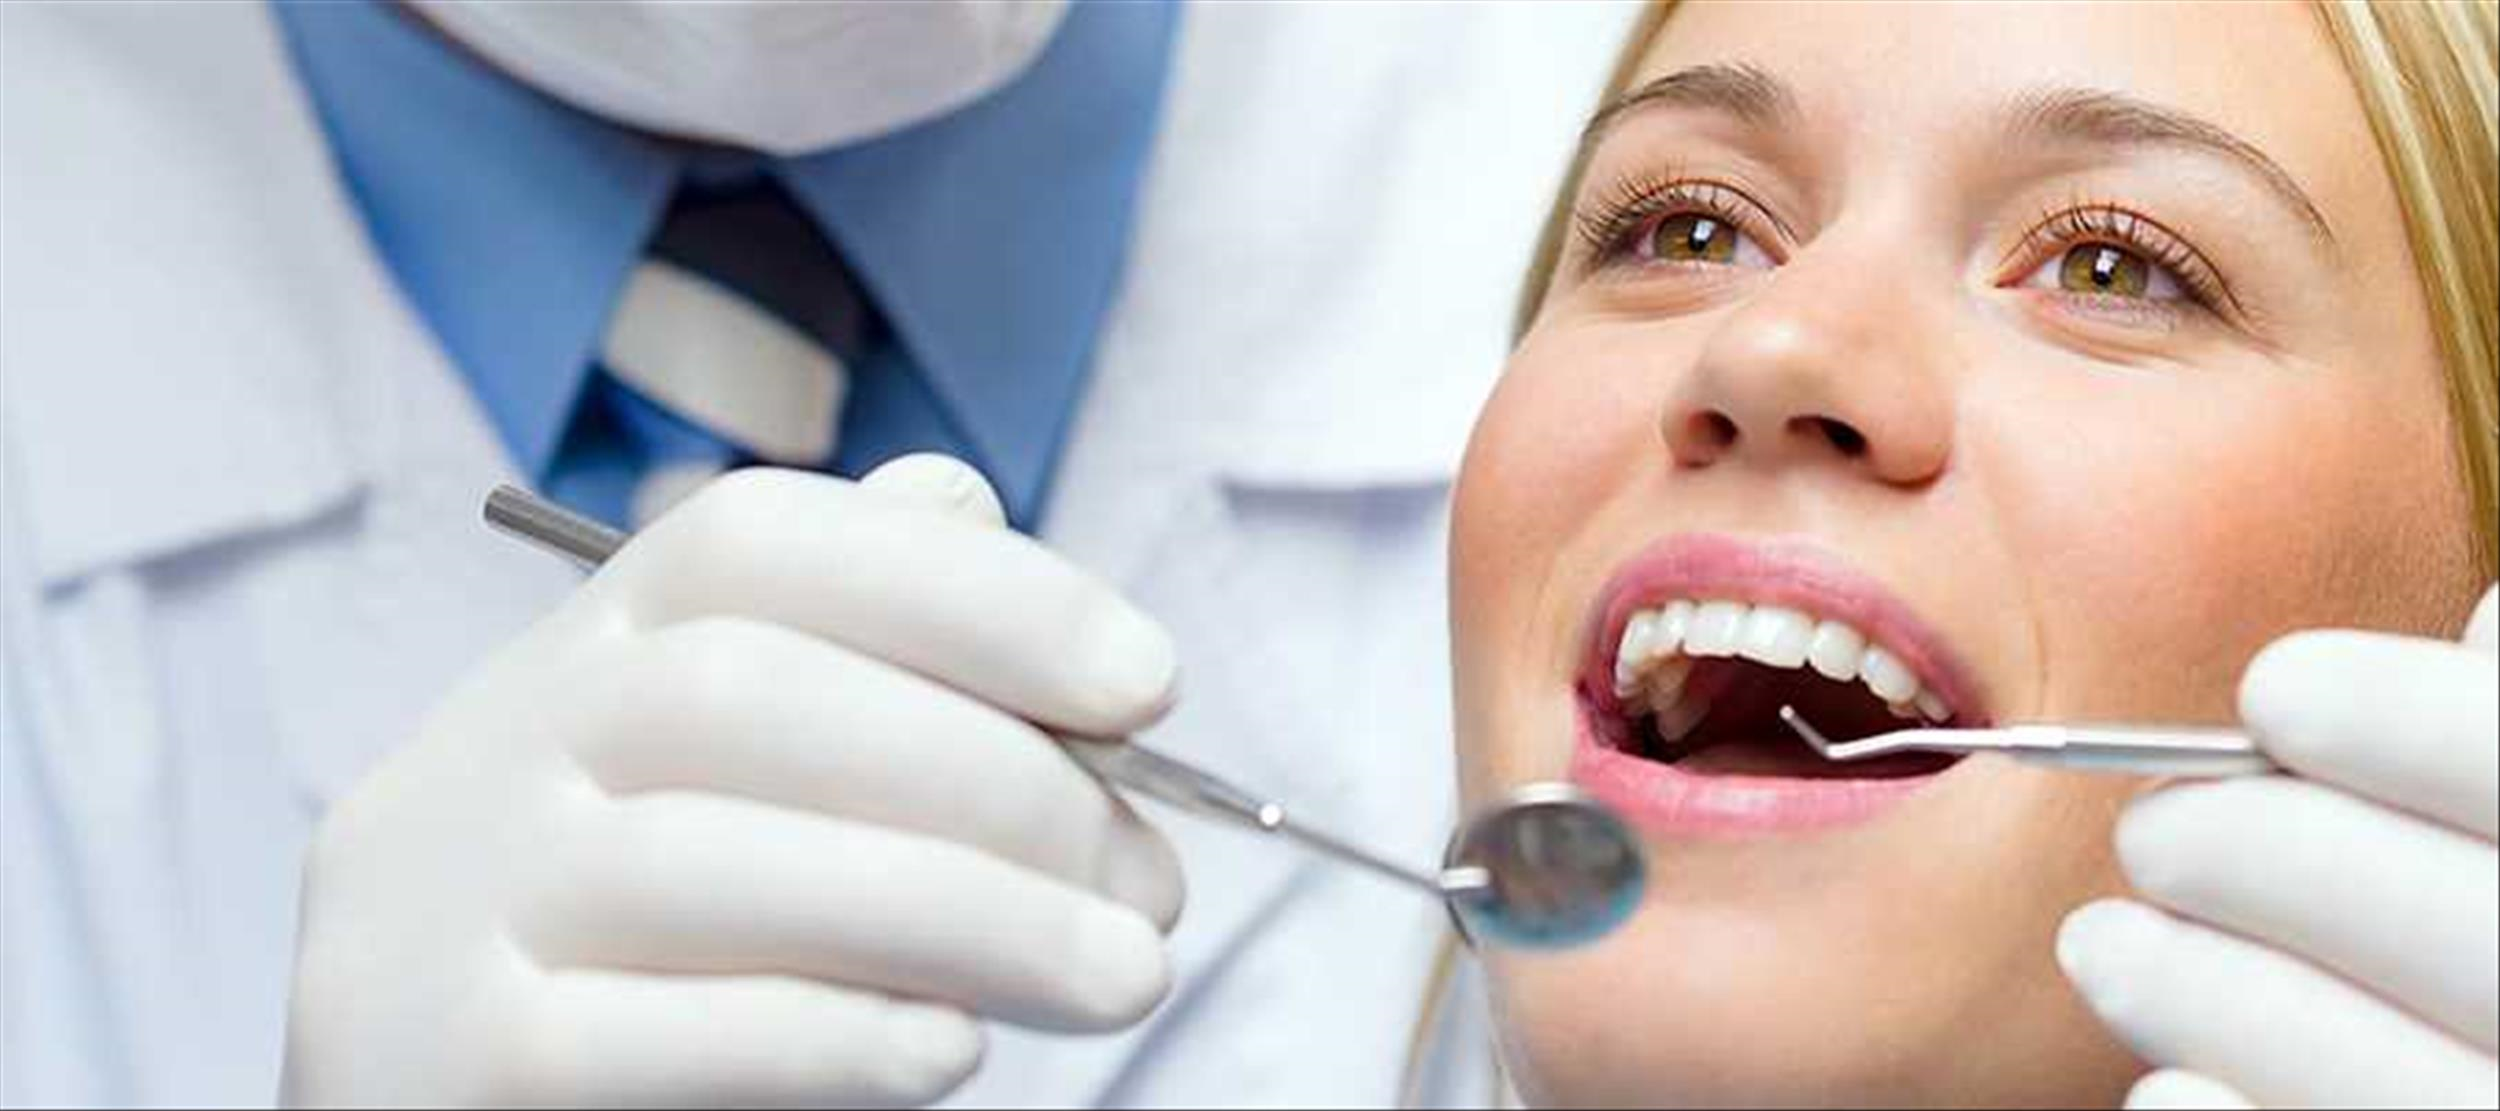 Ağız Diş Çene Cerrahisi , Yirmi Yaş Dişleri , Diş çekimi